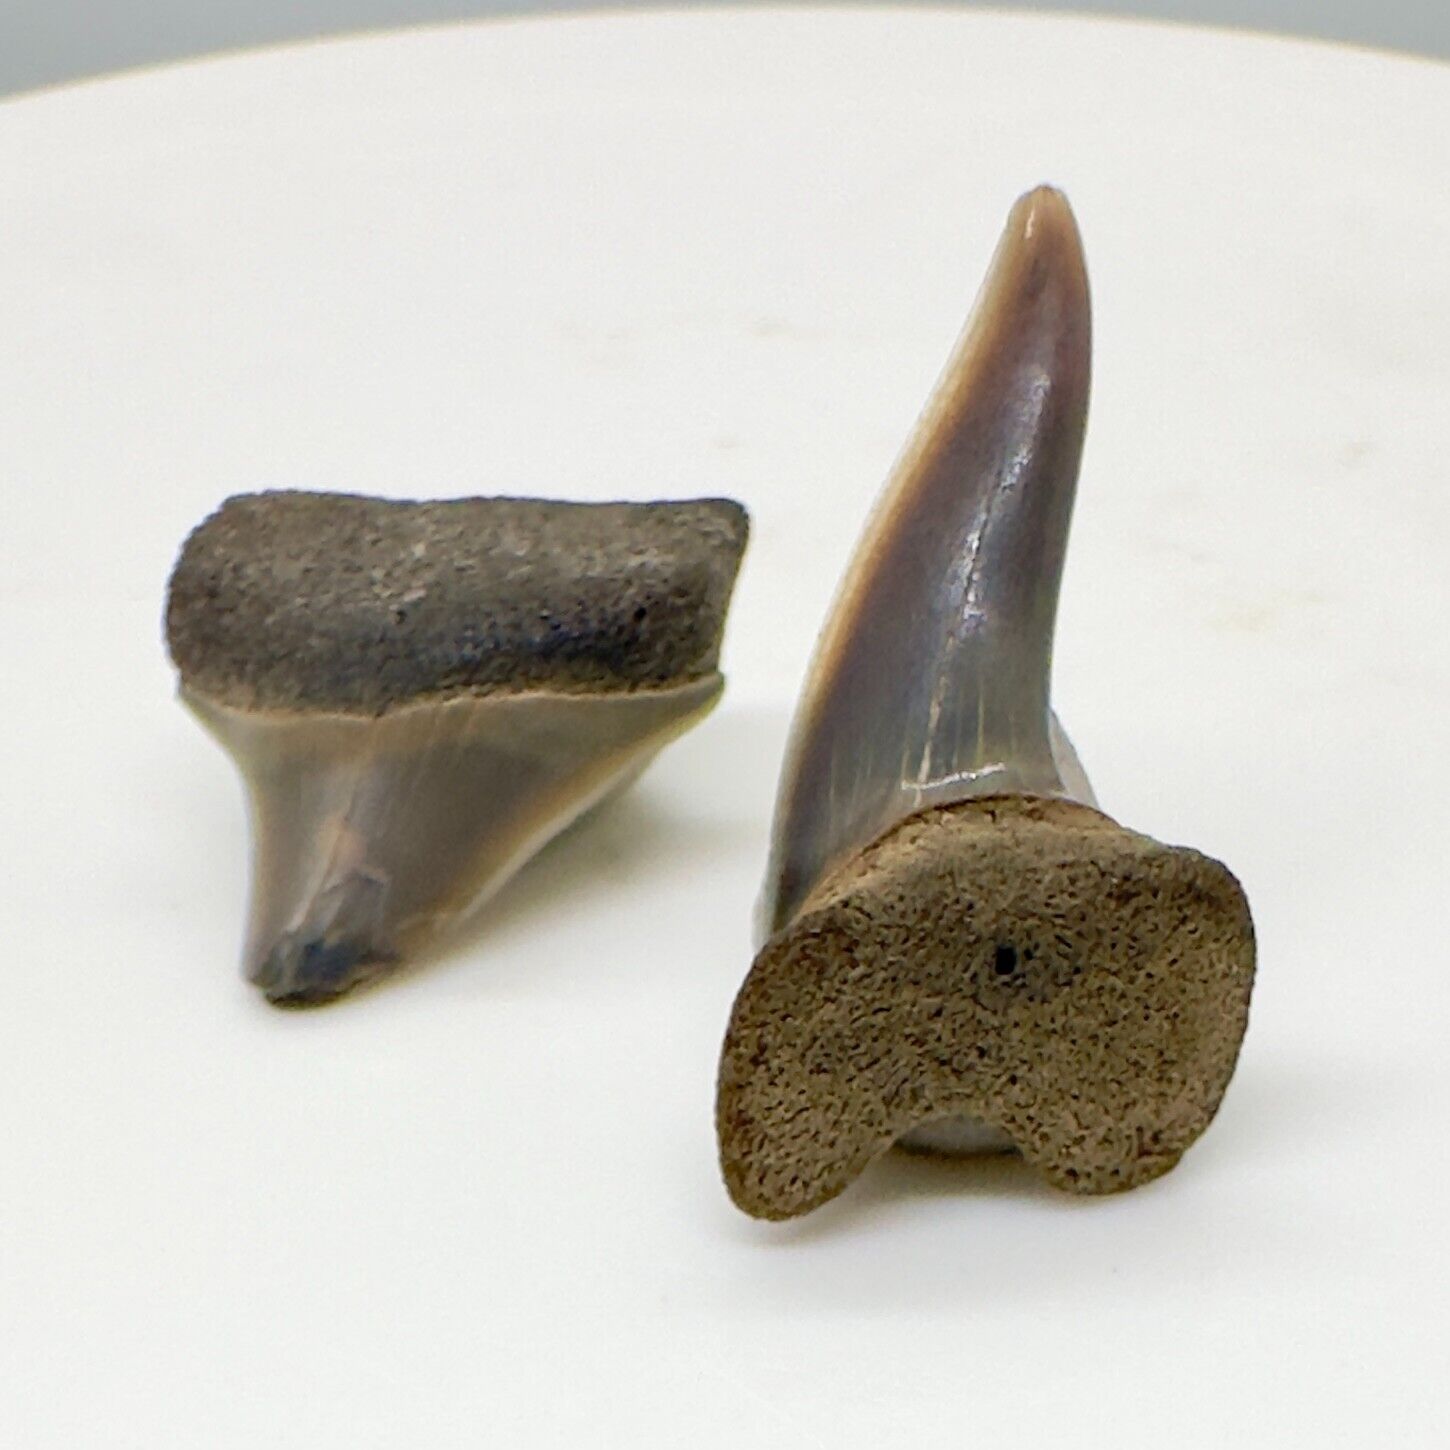 Pair of Rare Fossil EXTINCT XIPHODOLAMIA ENSIS Teeth - Egem, Belgium